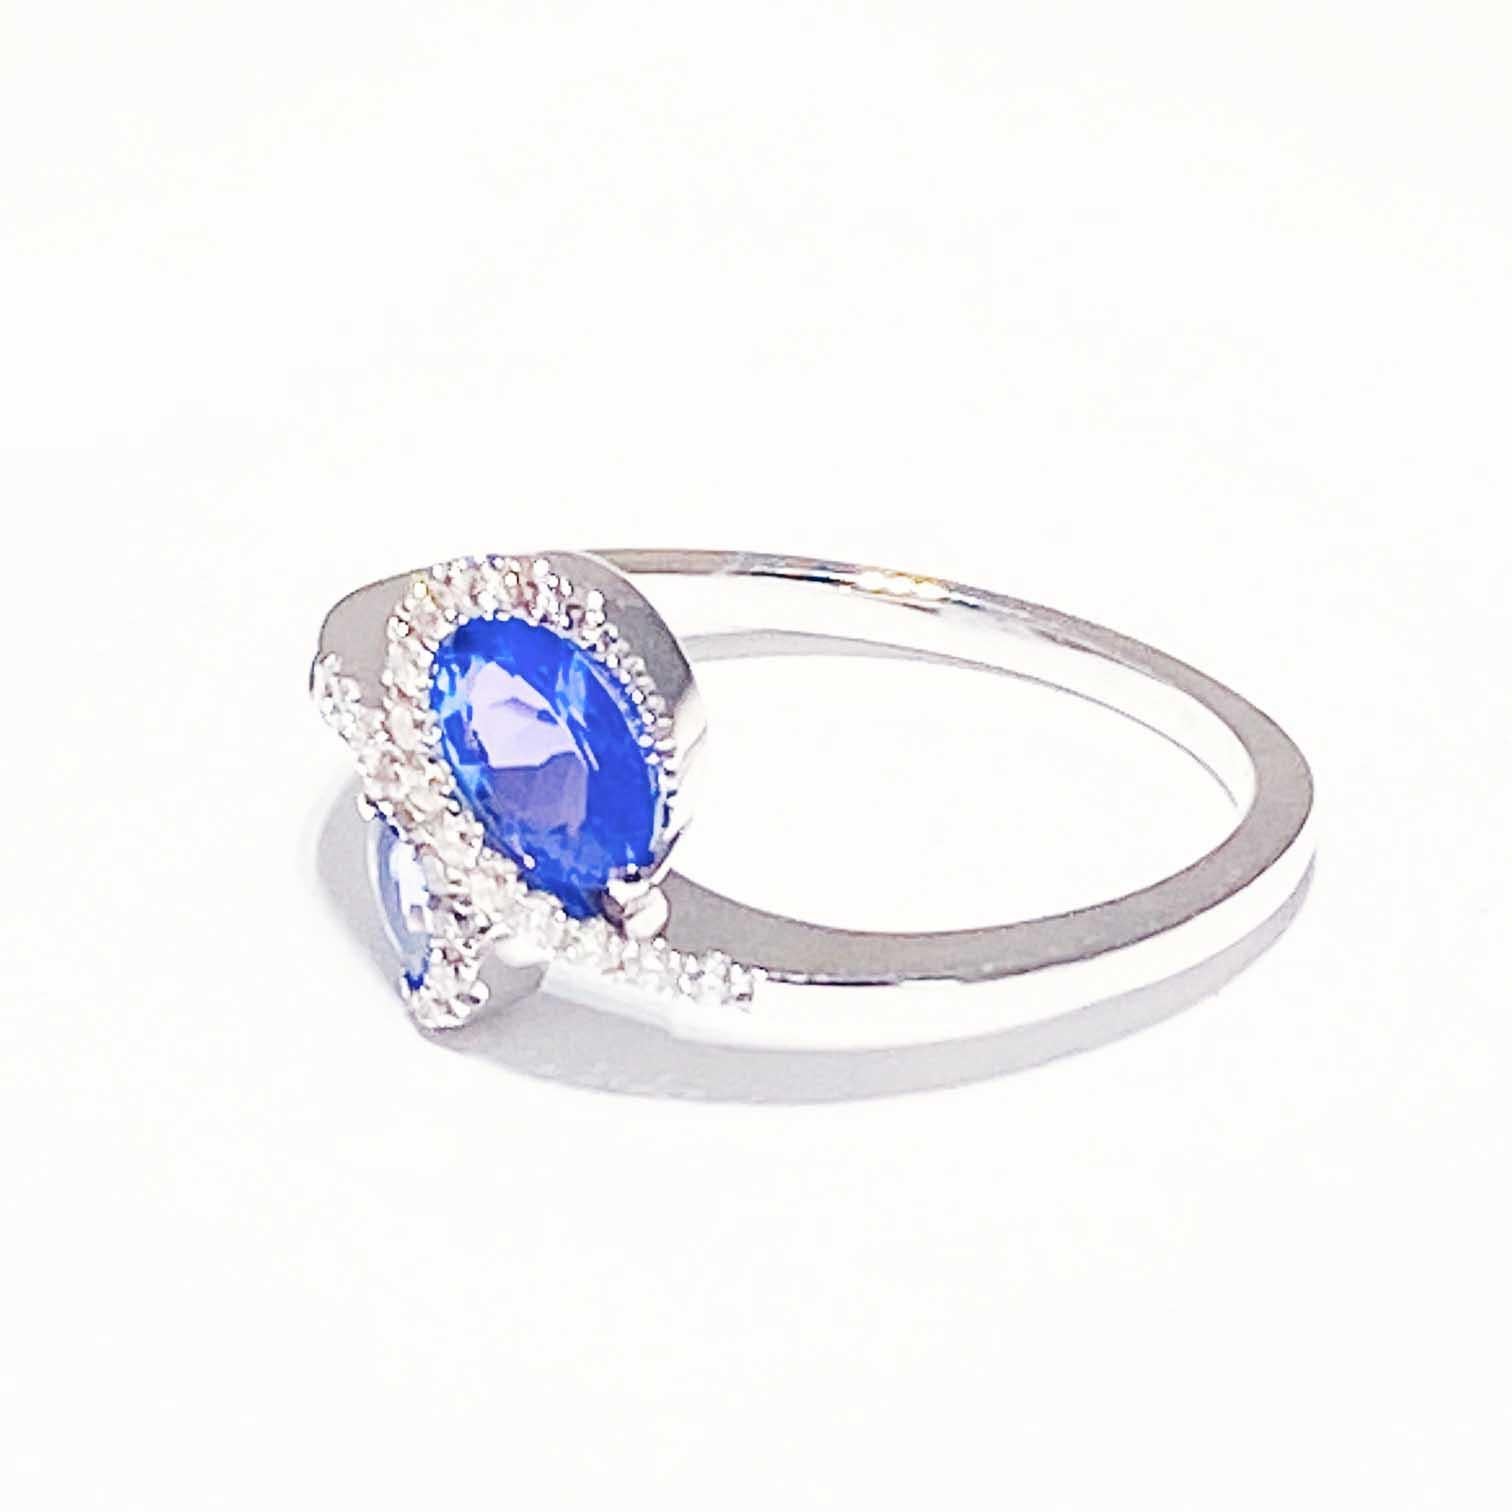 Individuelles, asymmetrisches Design mit echten Tansaniten und Diamanten! Der Ring enthält zwei wunderschöne, echte Tansanite, die von Diamanten umrahmt sind, die in einem Bypass-Design gefasst sind. Die Ringfassung ist skurril und atemberaubend!